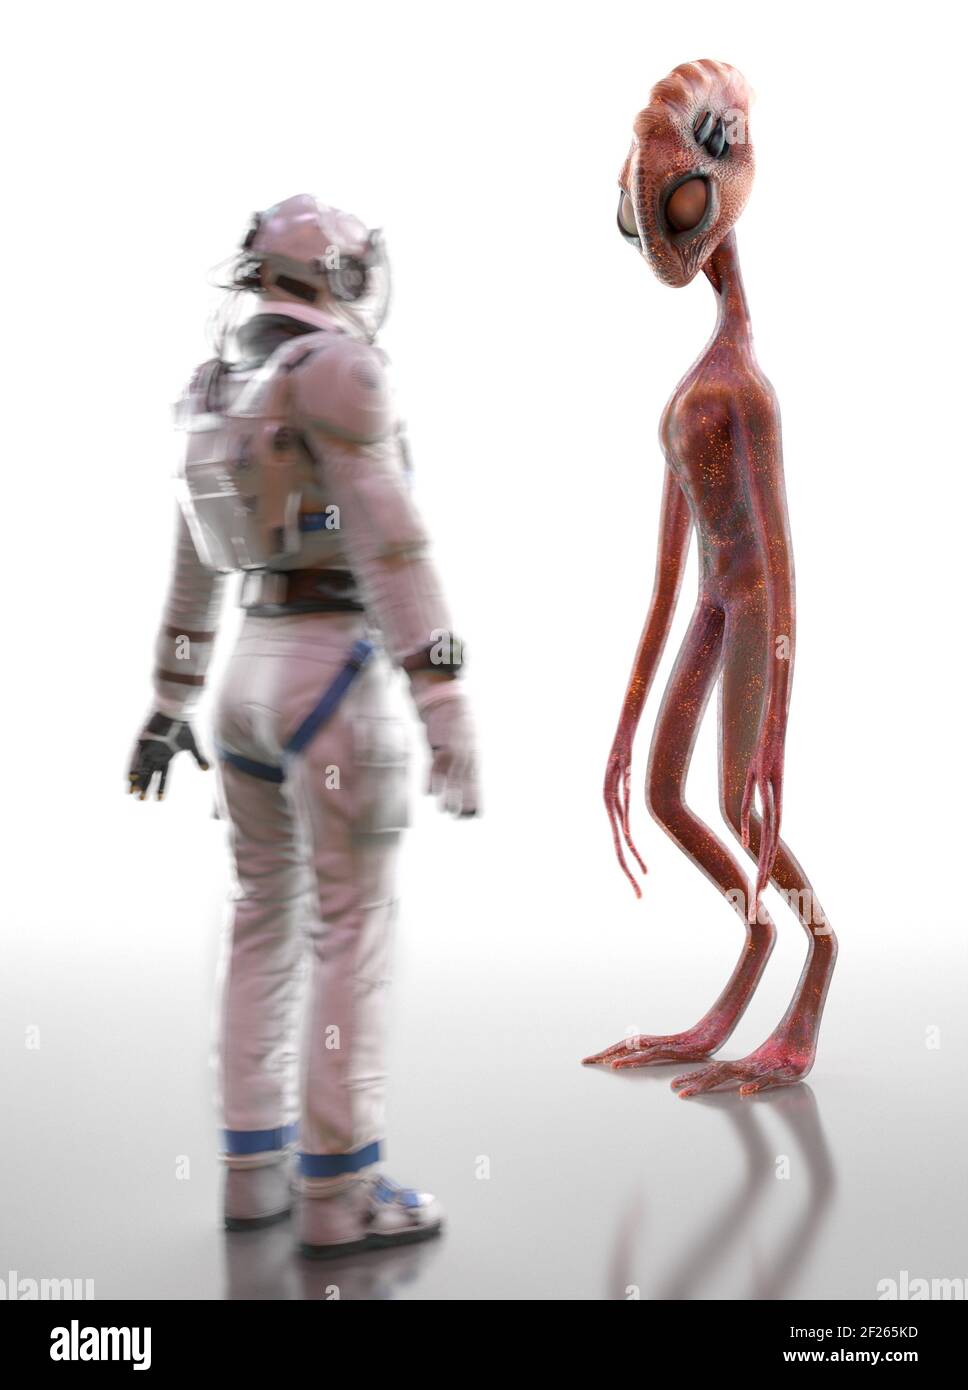 Incontro e conoscenza di uno straniero e di un umano. Alieno umanoide e astronauta su sfondo bianco. Contatto extraterrestre. Rendering 3D Foto Stock